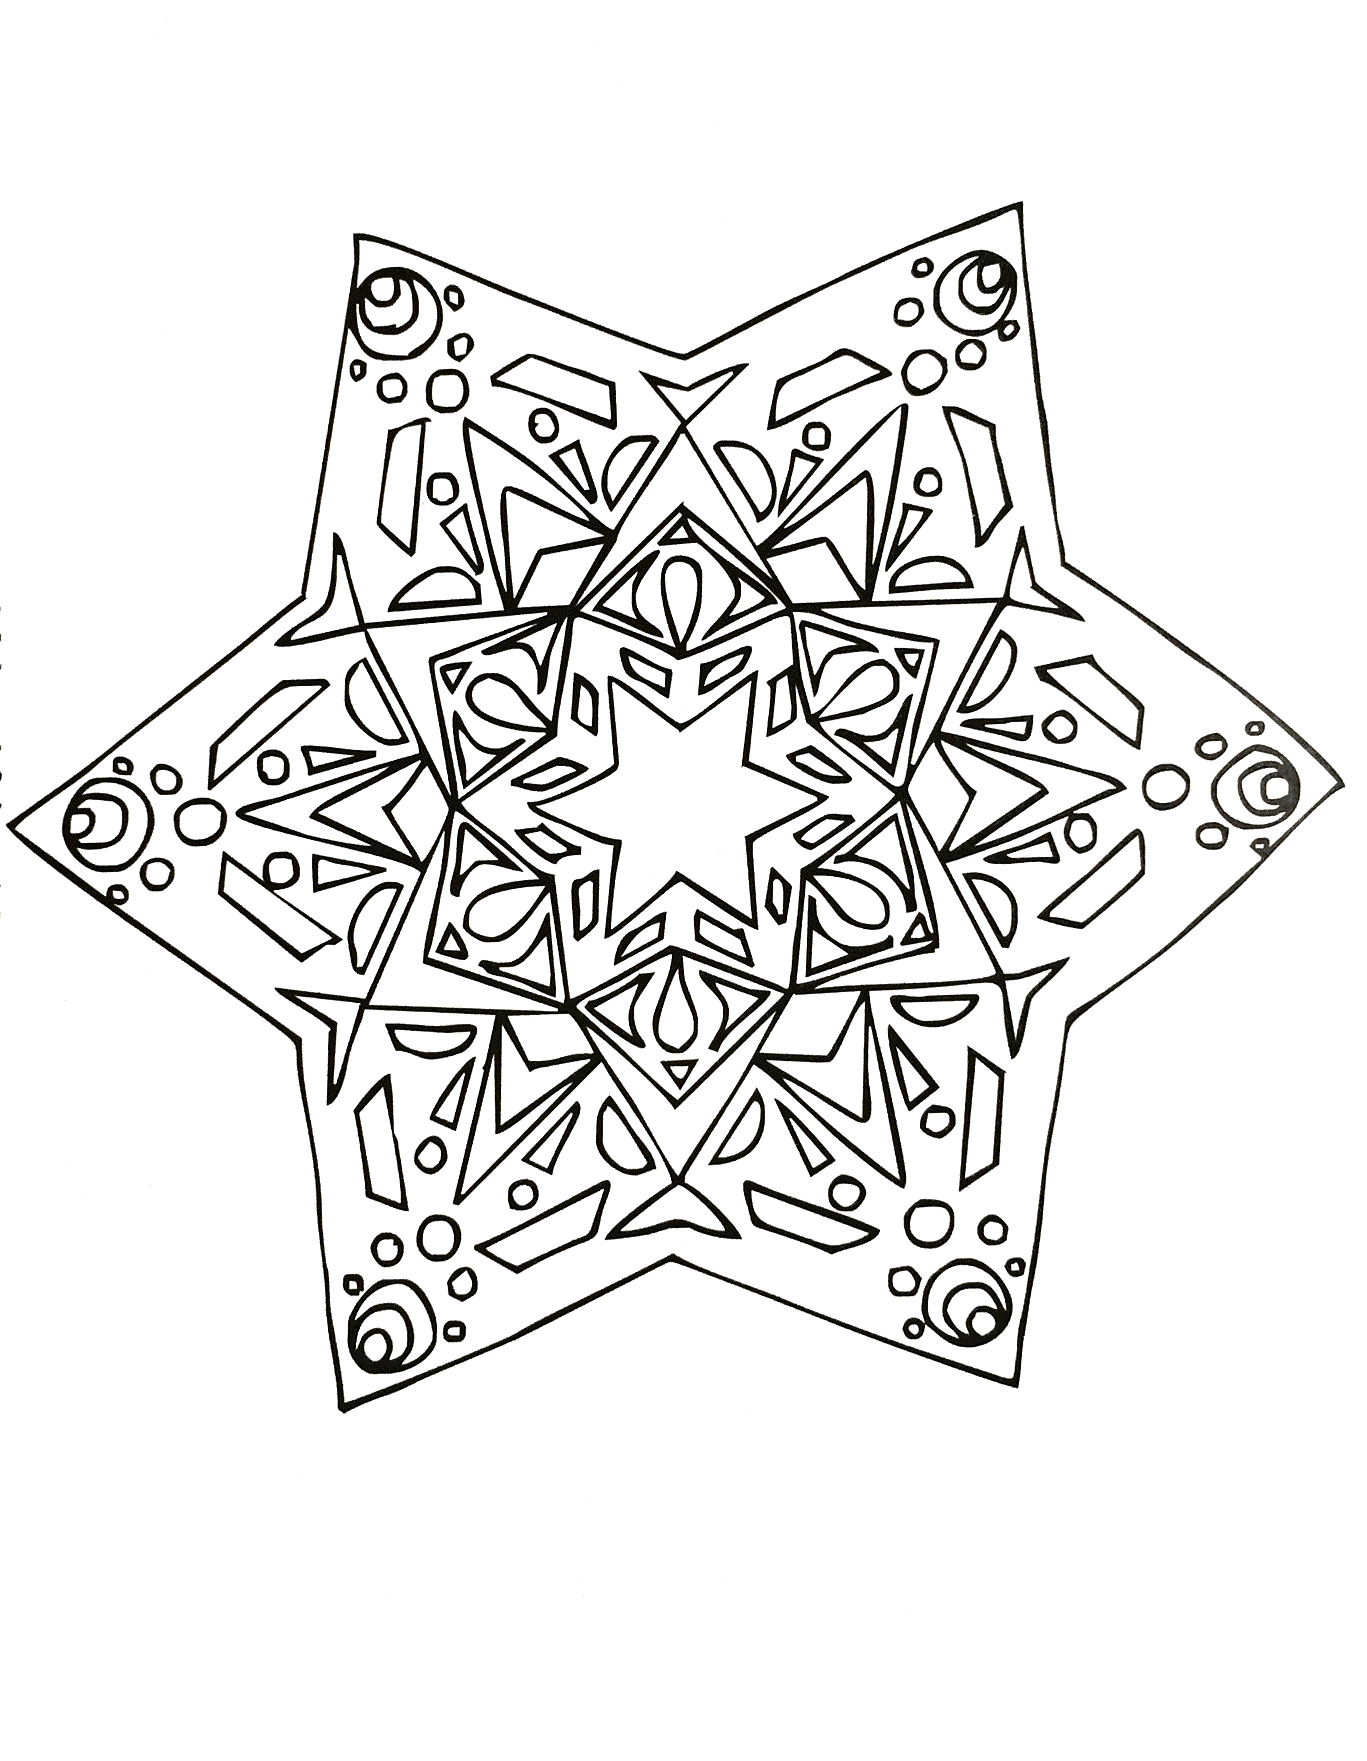 Si vous êtes prêt à passer de longues minutes de relaxation, préparez vous à colorier ce Mandala étoilé assez complexes ... Vous pourrez utiliser de nombreuses couleurs si vous le souhaitez.